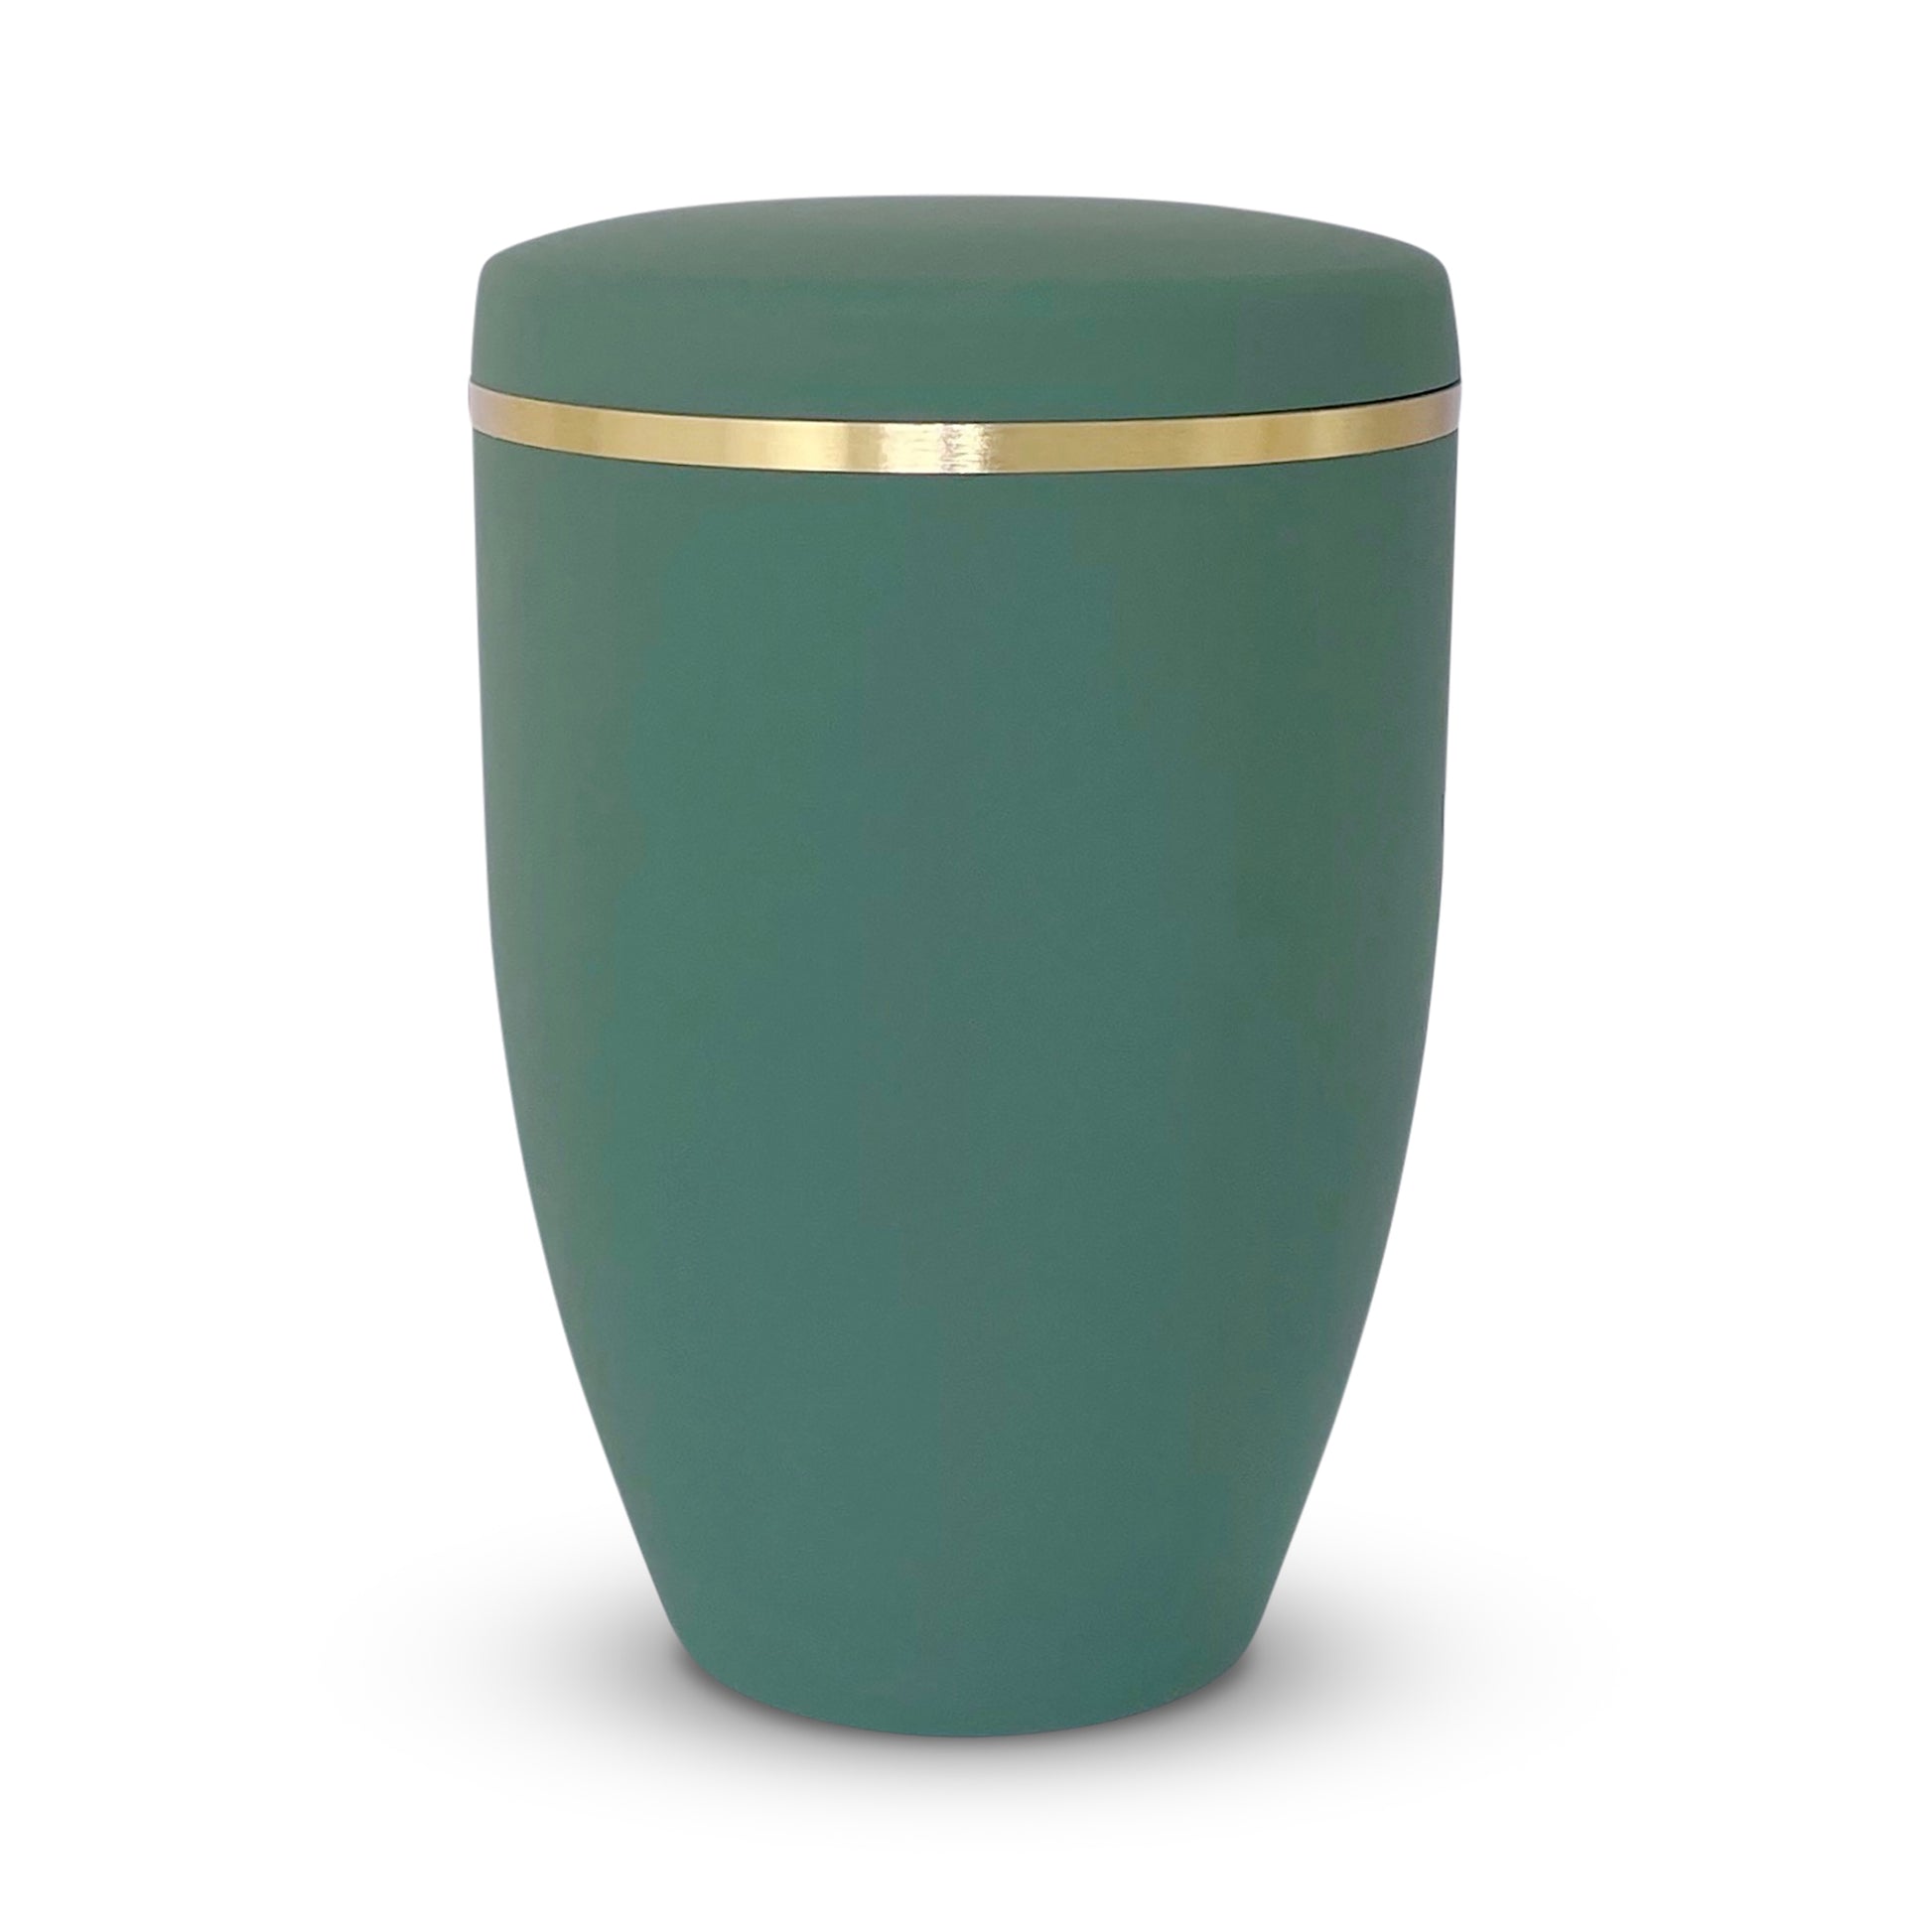 Elegant sage green coloured cremation urn with golden band.